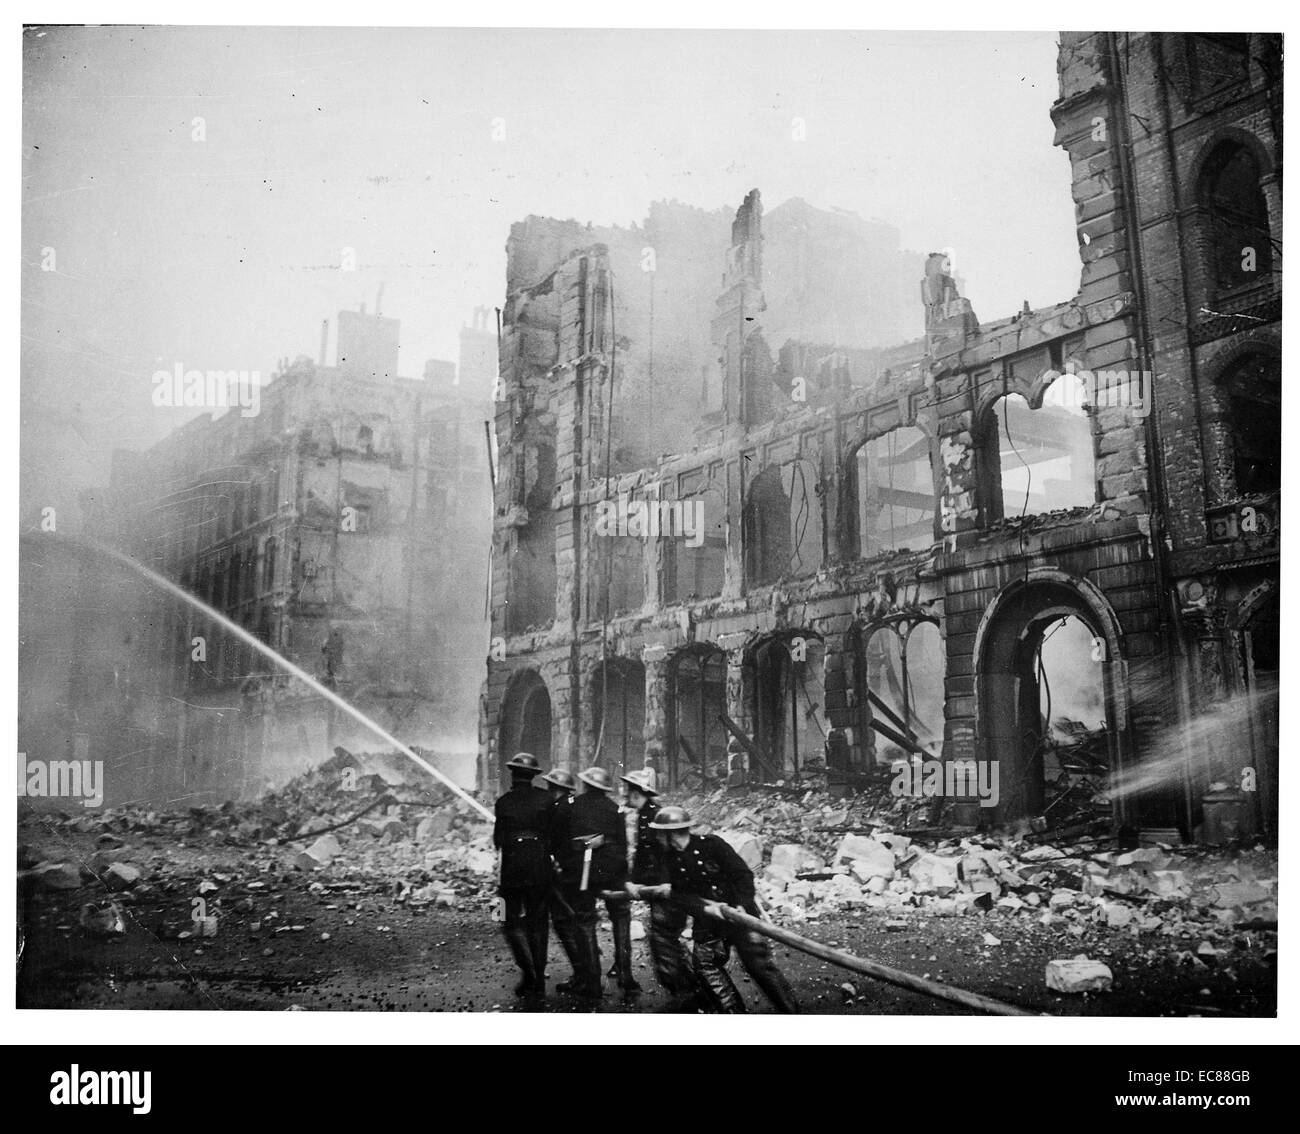 Photographie des pompiers lutter contre les flammes pendant les attentats de Londres (Blitz). Datée 1941 Banque D'Images